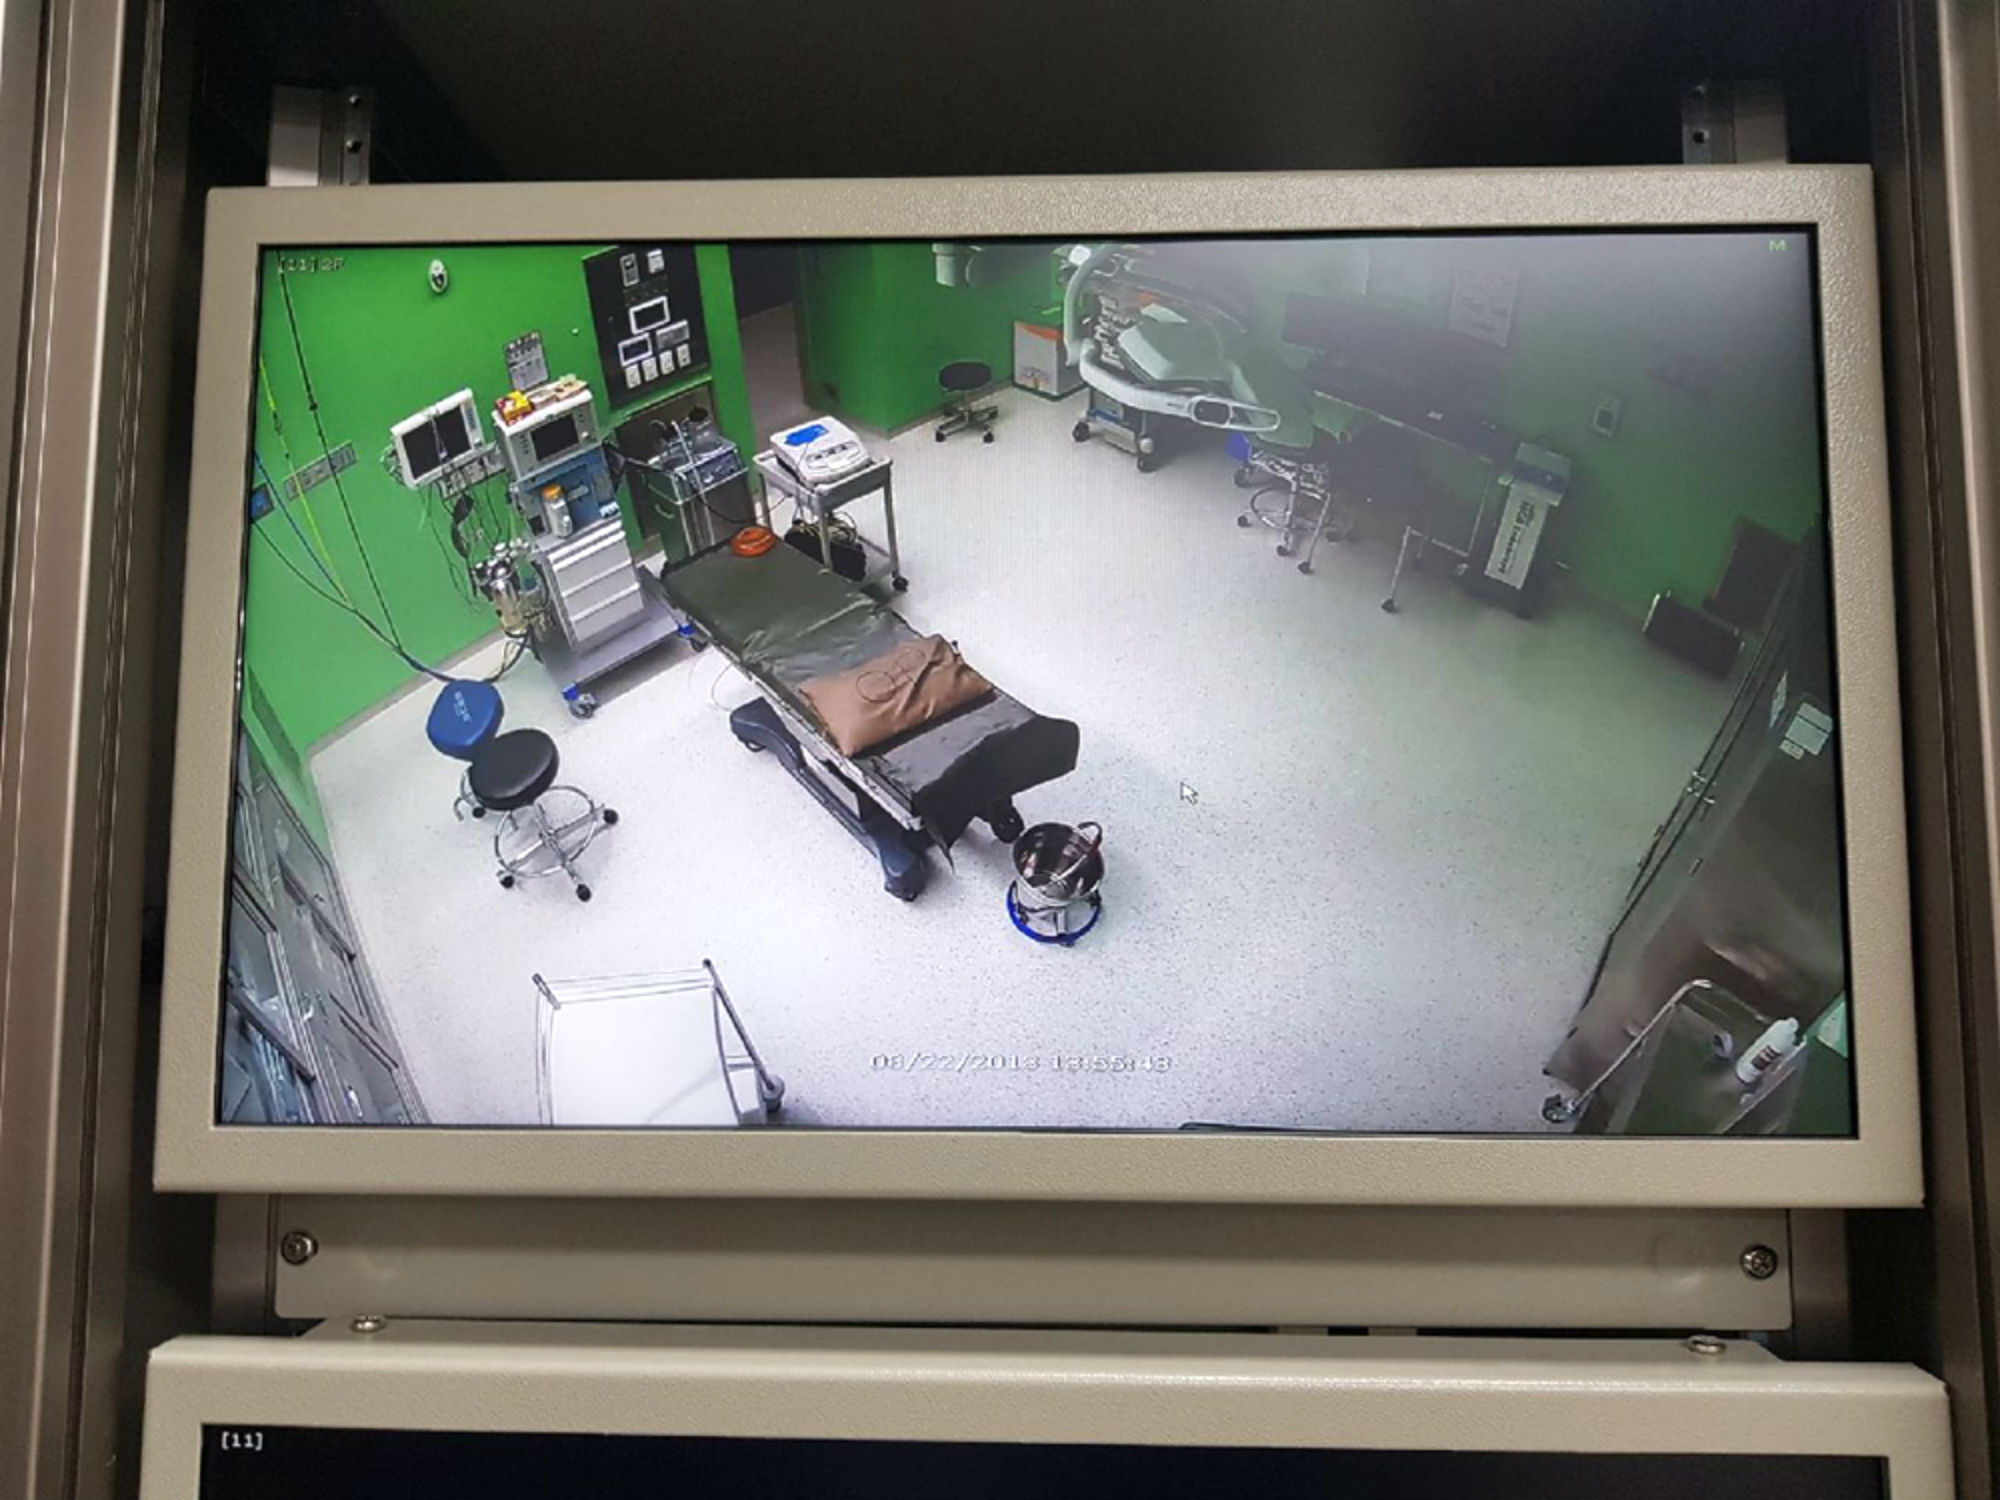 경기도는 의료진 의지에 따라 수술실 CCTV 촬영 동의율이 극명하게 차이 난다는 조사 결과가 나왔다고 2일 밝혔다. 수술실 CCTV 자료 사진.